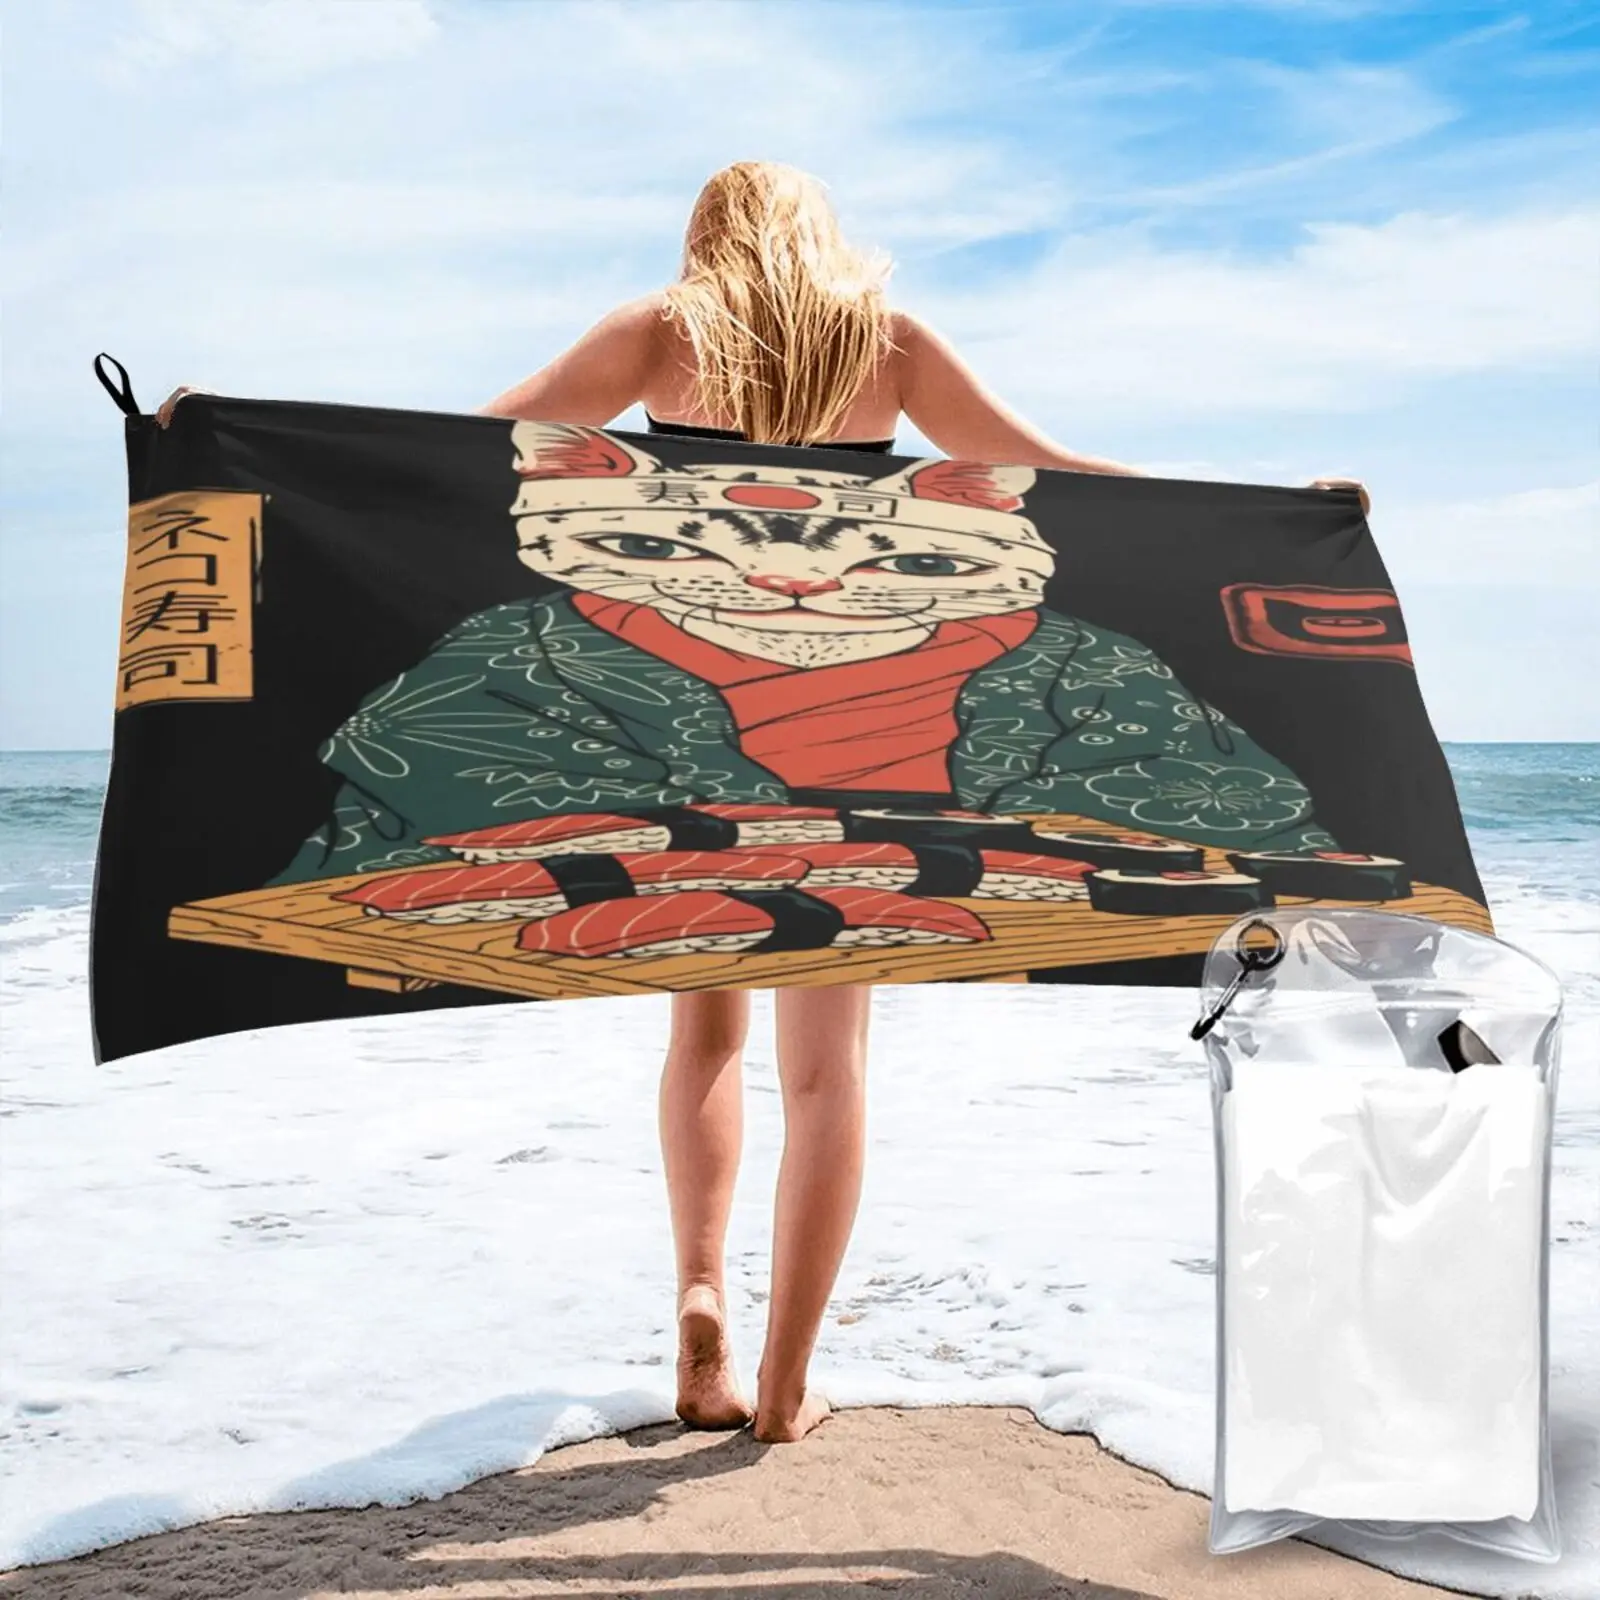 

Пляжное полотенце Neko суши Винсента Тринидада пляжное полотенце для пляжа пляжное роскошное пляжное полотенце для ванны и сауны пляжная оде...